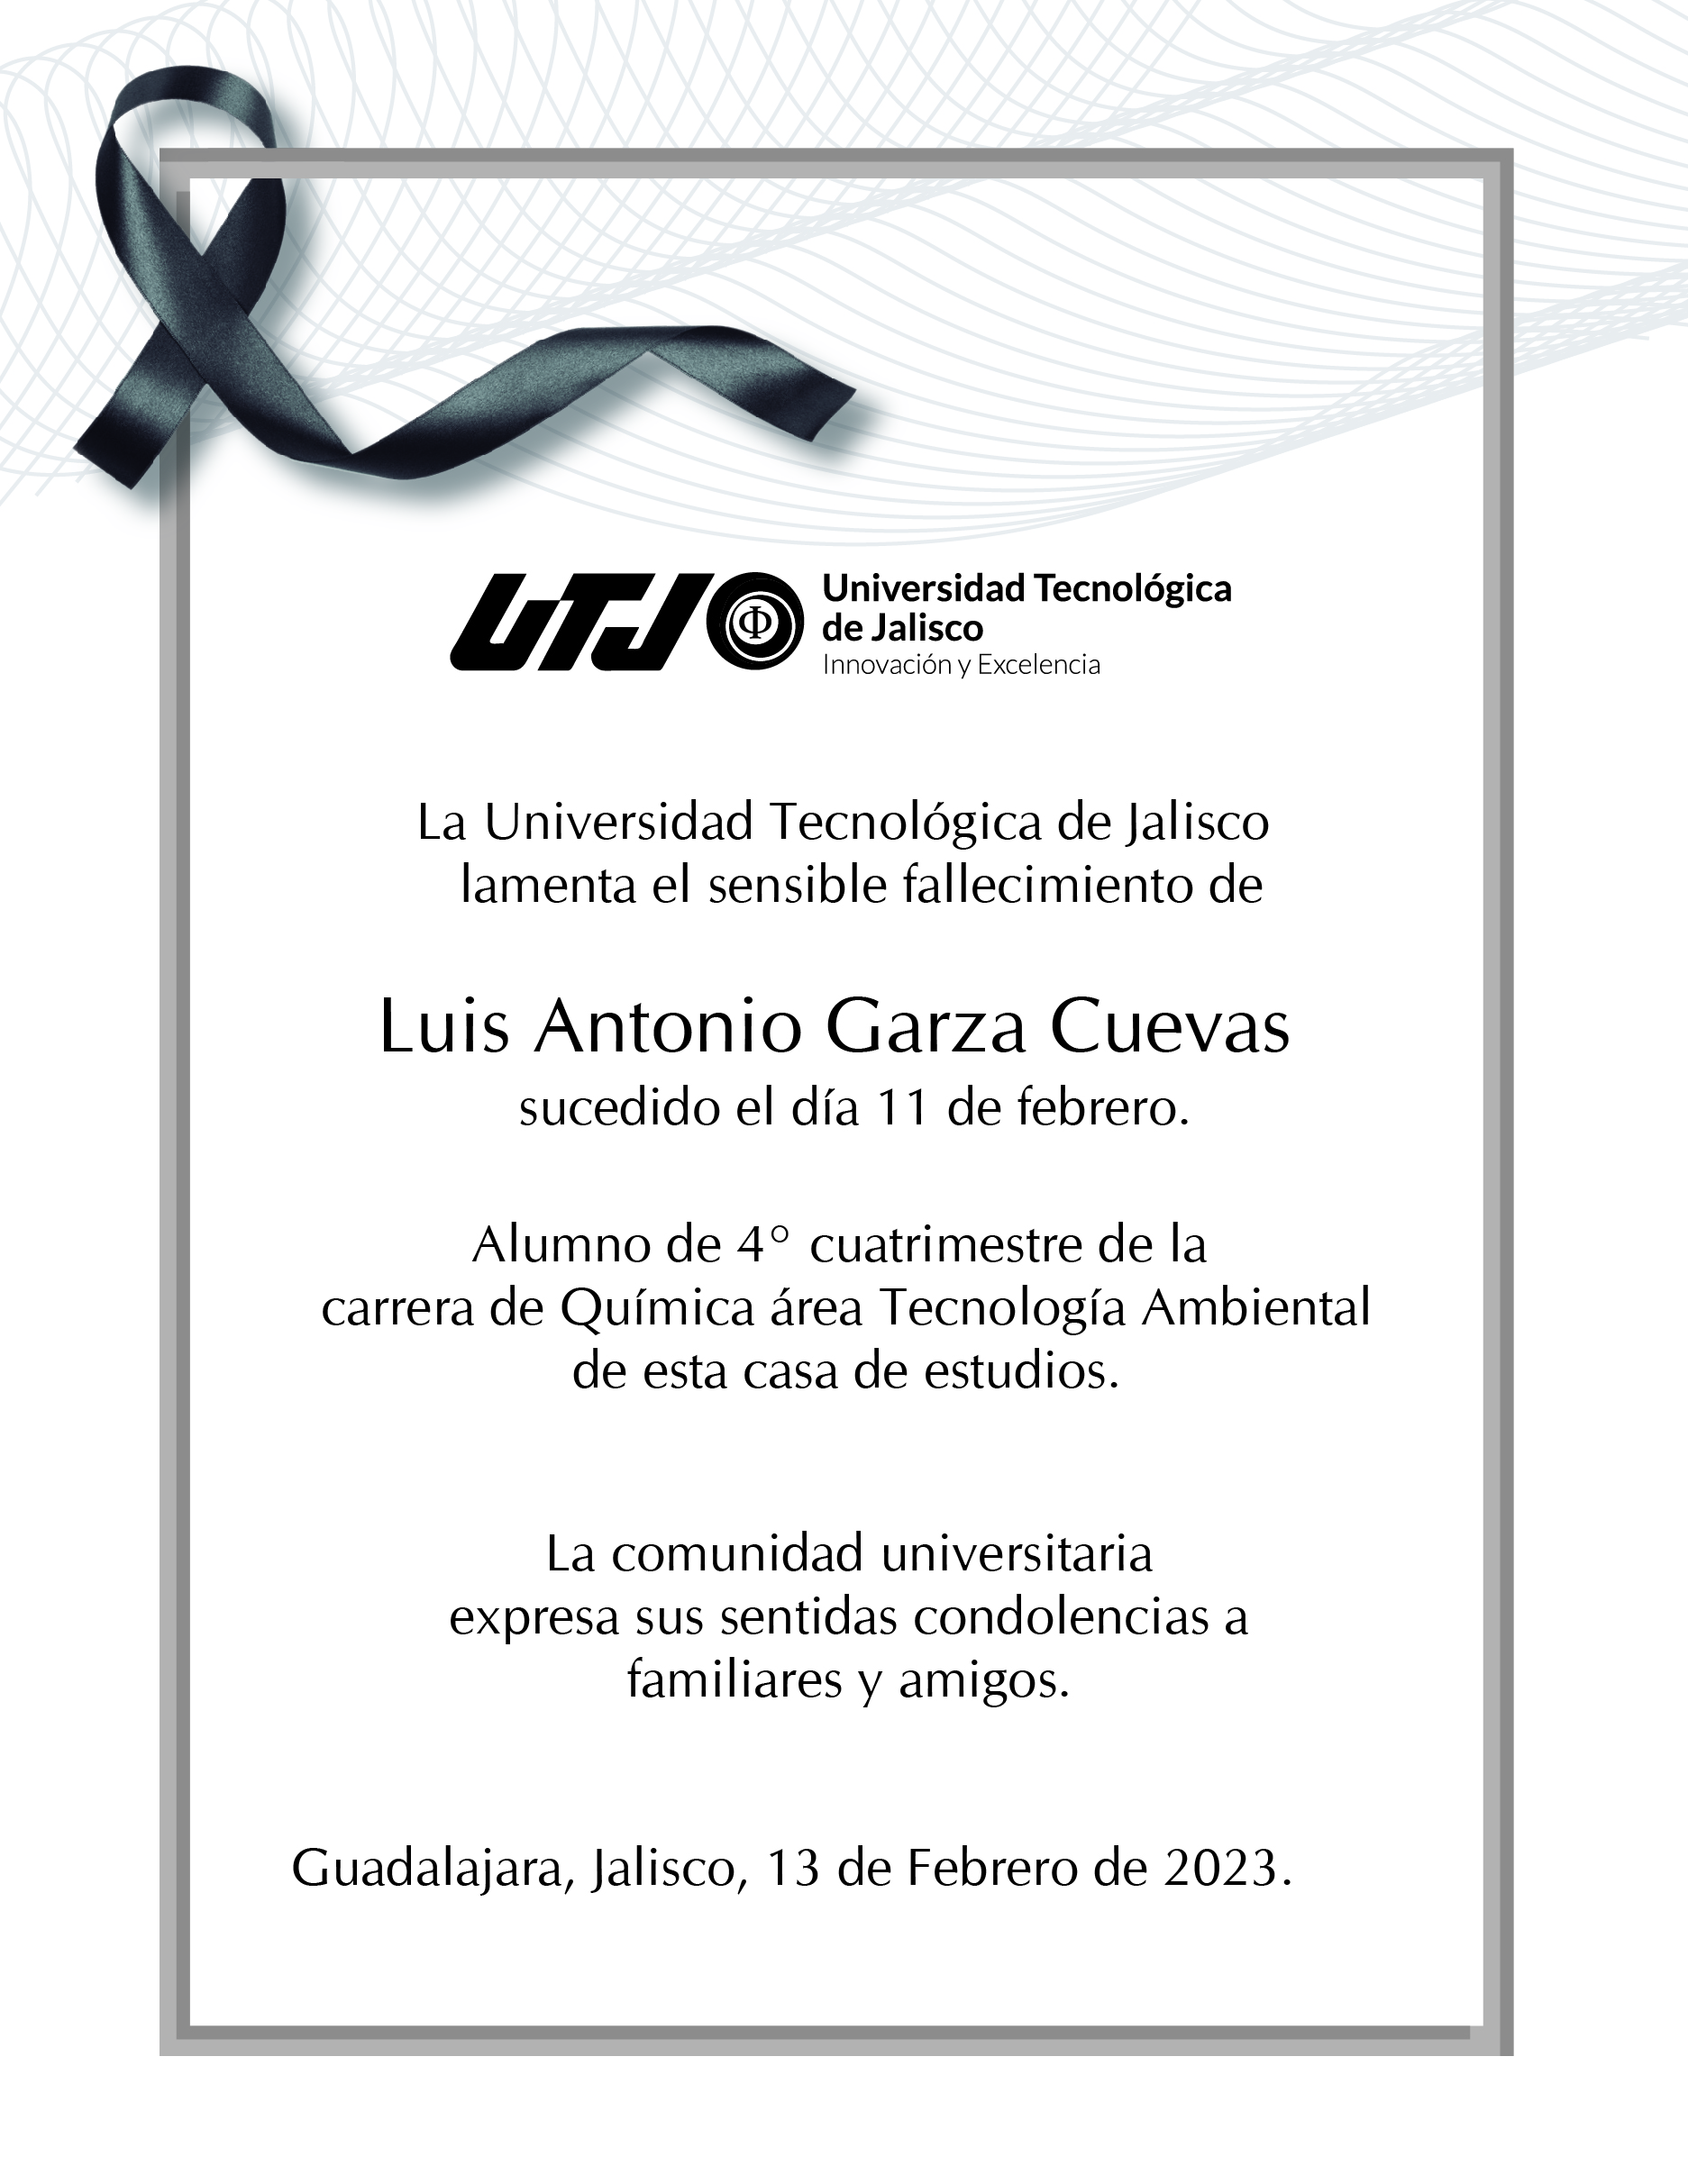 Esquela del fallecimiento de Luis Antonio Garza Cuevas, Alumno de 4° cuatrimestre de la carrera de Química área Tecnología Ambiental de esta casa de estudios.